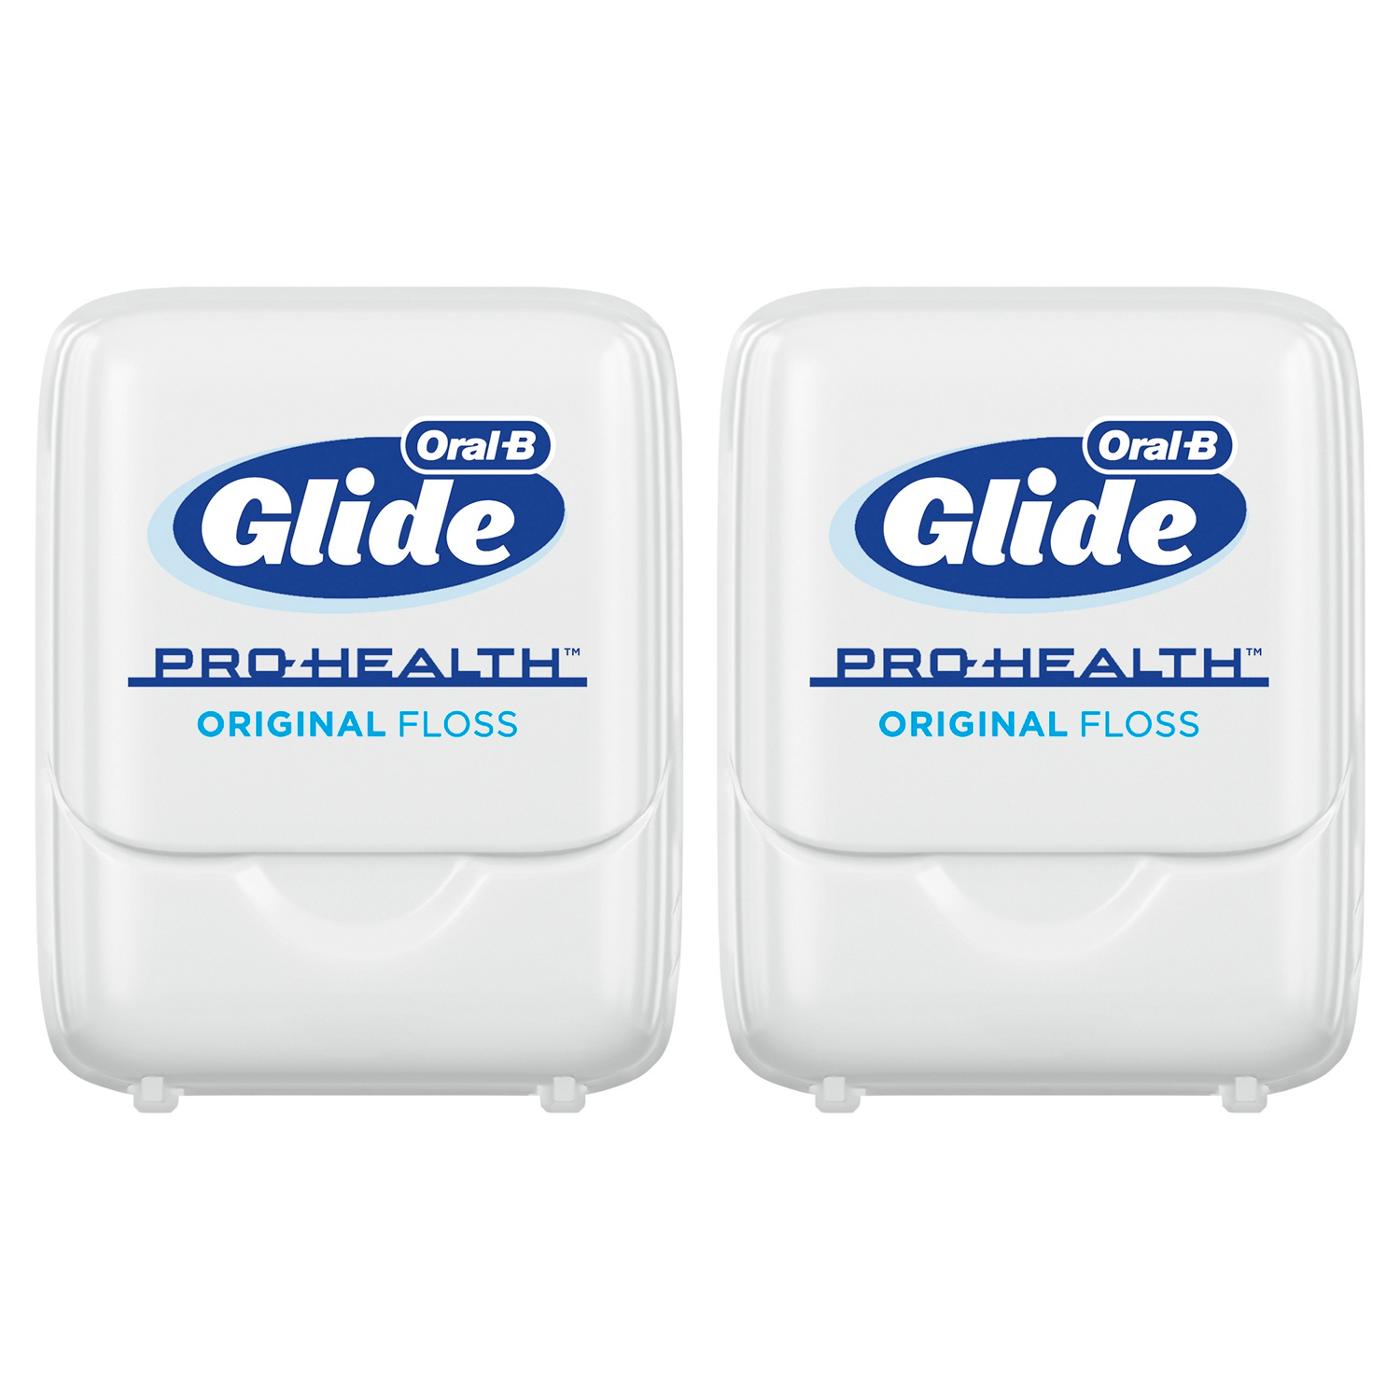 Oral-B Glide Pro-Health Original Dental Floss Value Pack; image 7 of 9